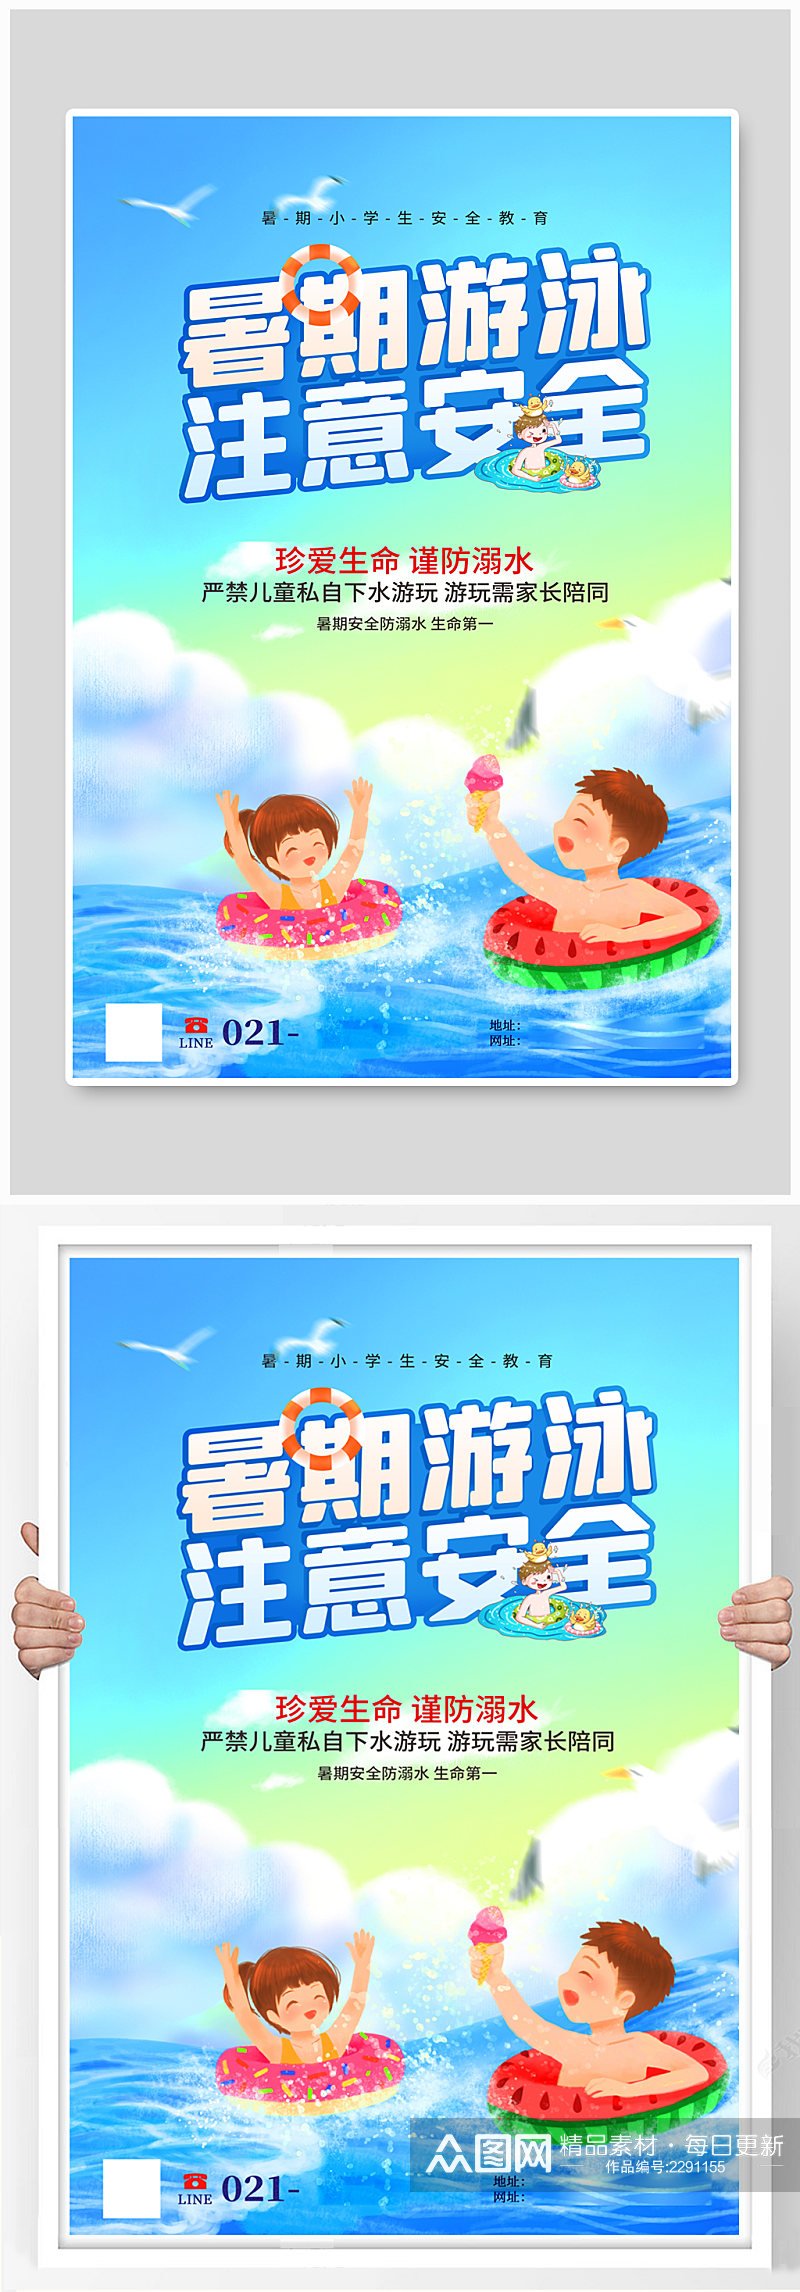 暑期游泳注意安全公益宣传海报素材